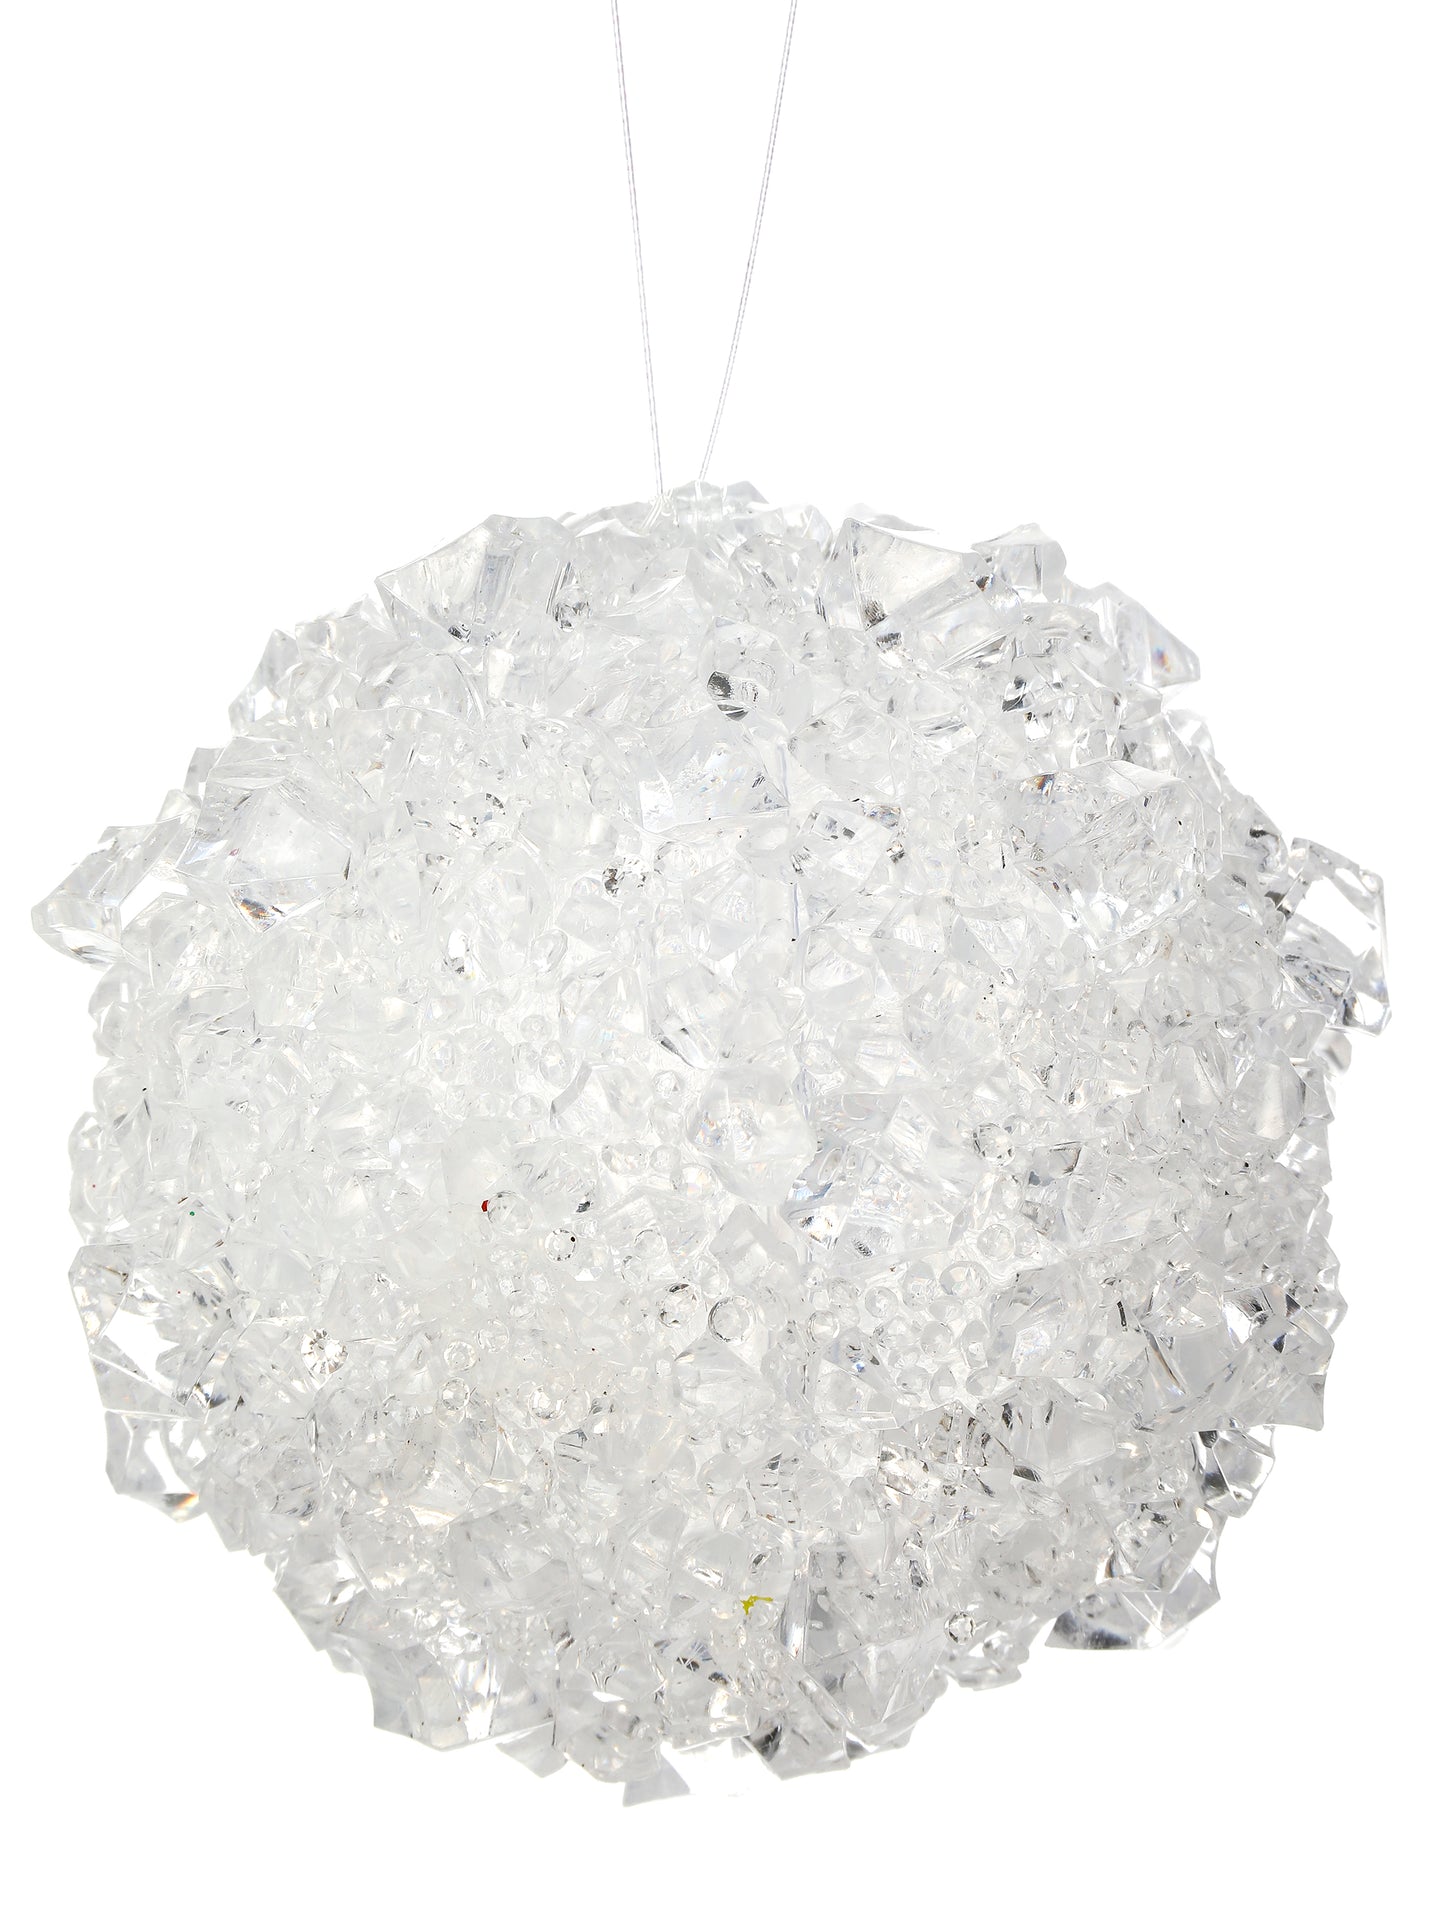 4" Ice Chunck Ball Ornament